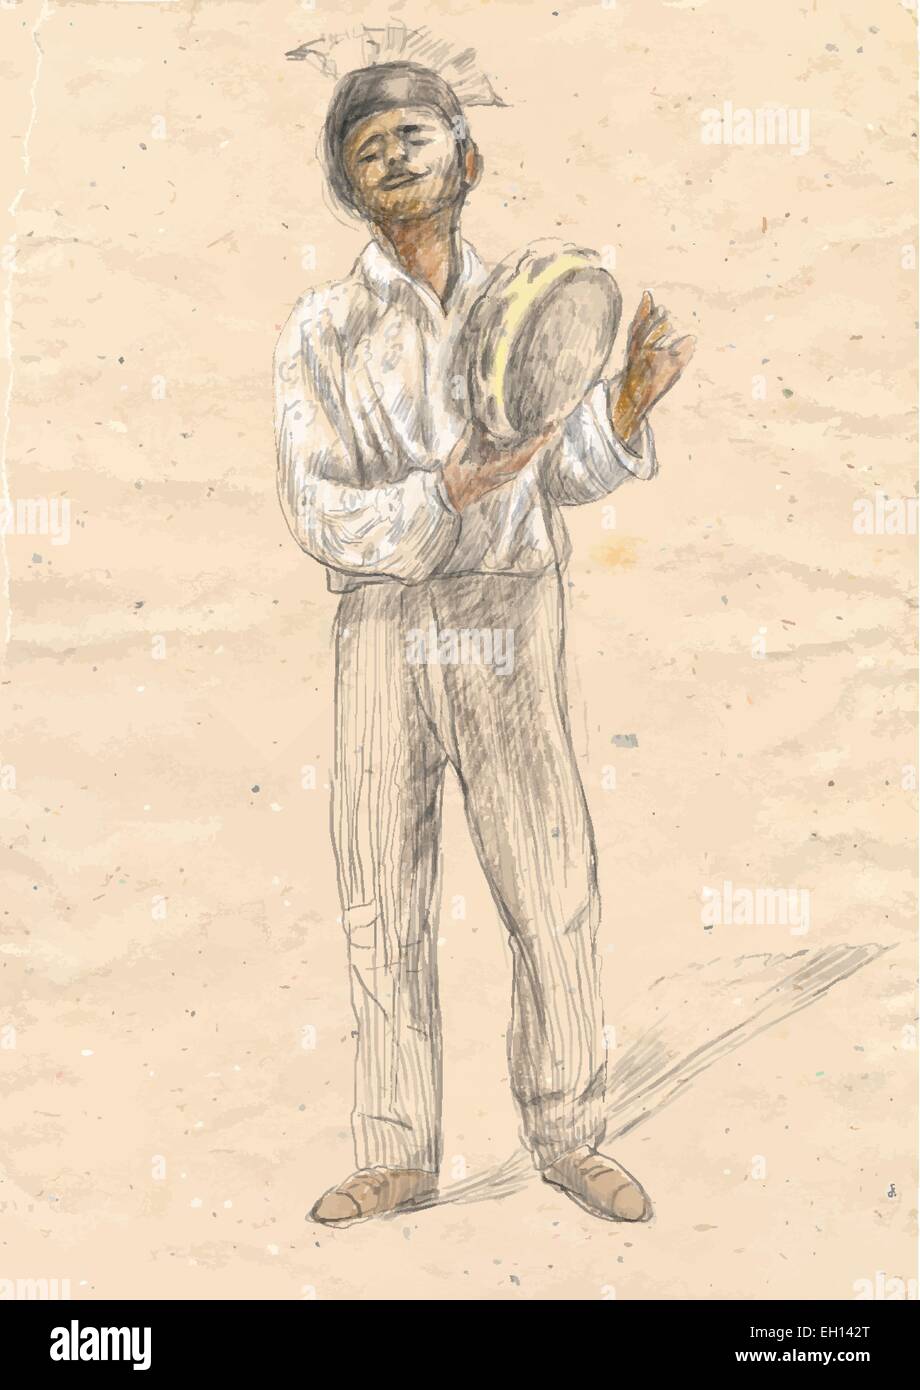 Eine Hand gezeichnete Vektor. Thema: Musik und Musiker. Tamburin Spieler - ein Zigeuner Mann spielt die Trommel. Eine handgezeichnete konvertierte vecto Stock Vektor